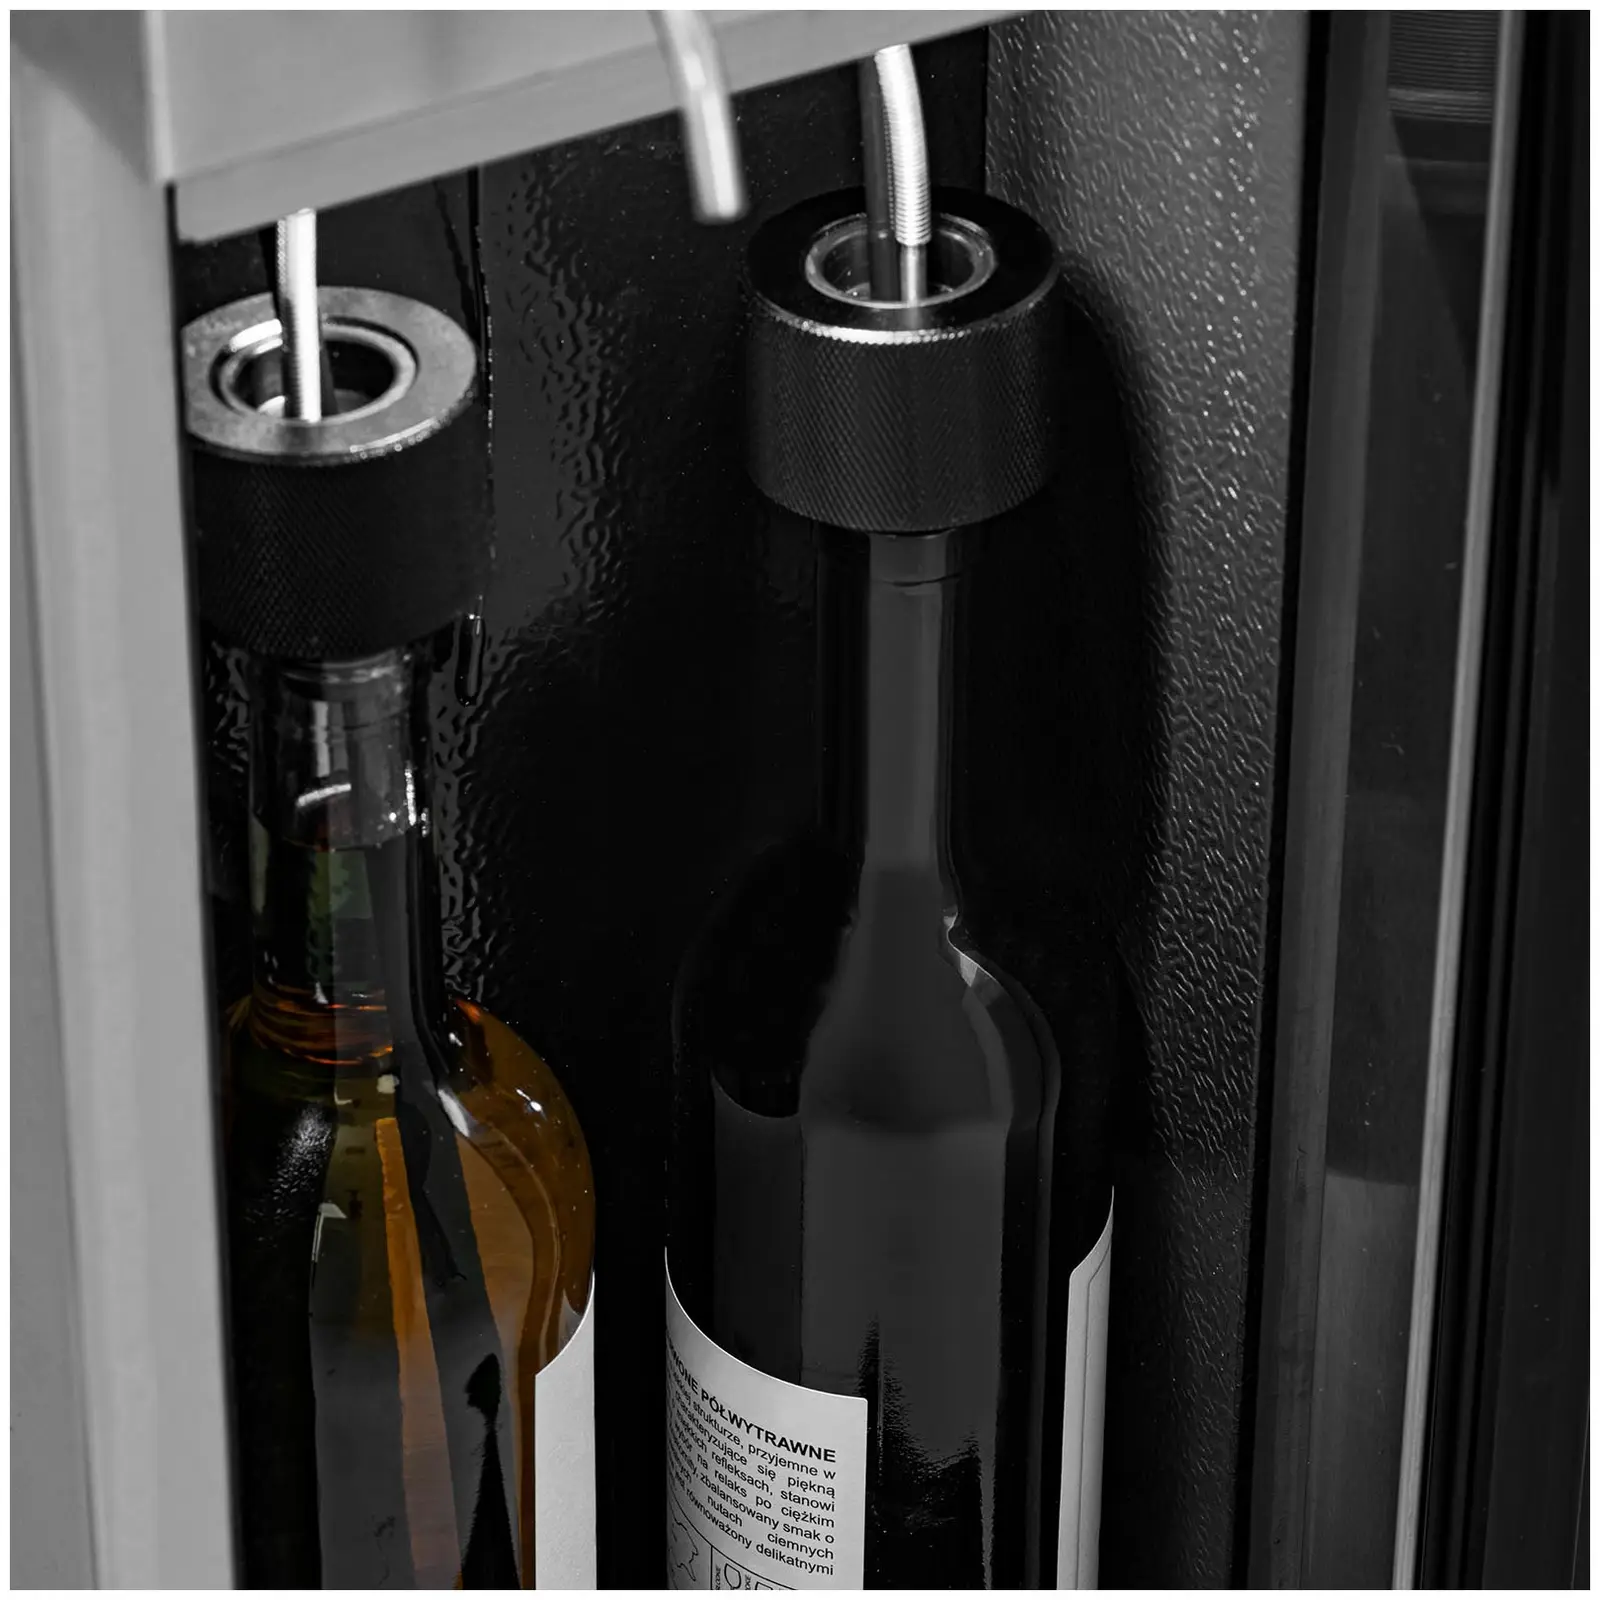 Spillatore vino professionale refrigerato - 2 bottiglie - Acciaio inox